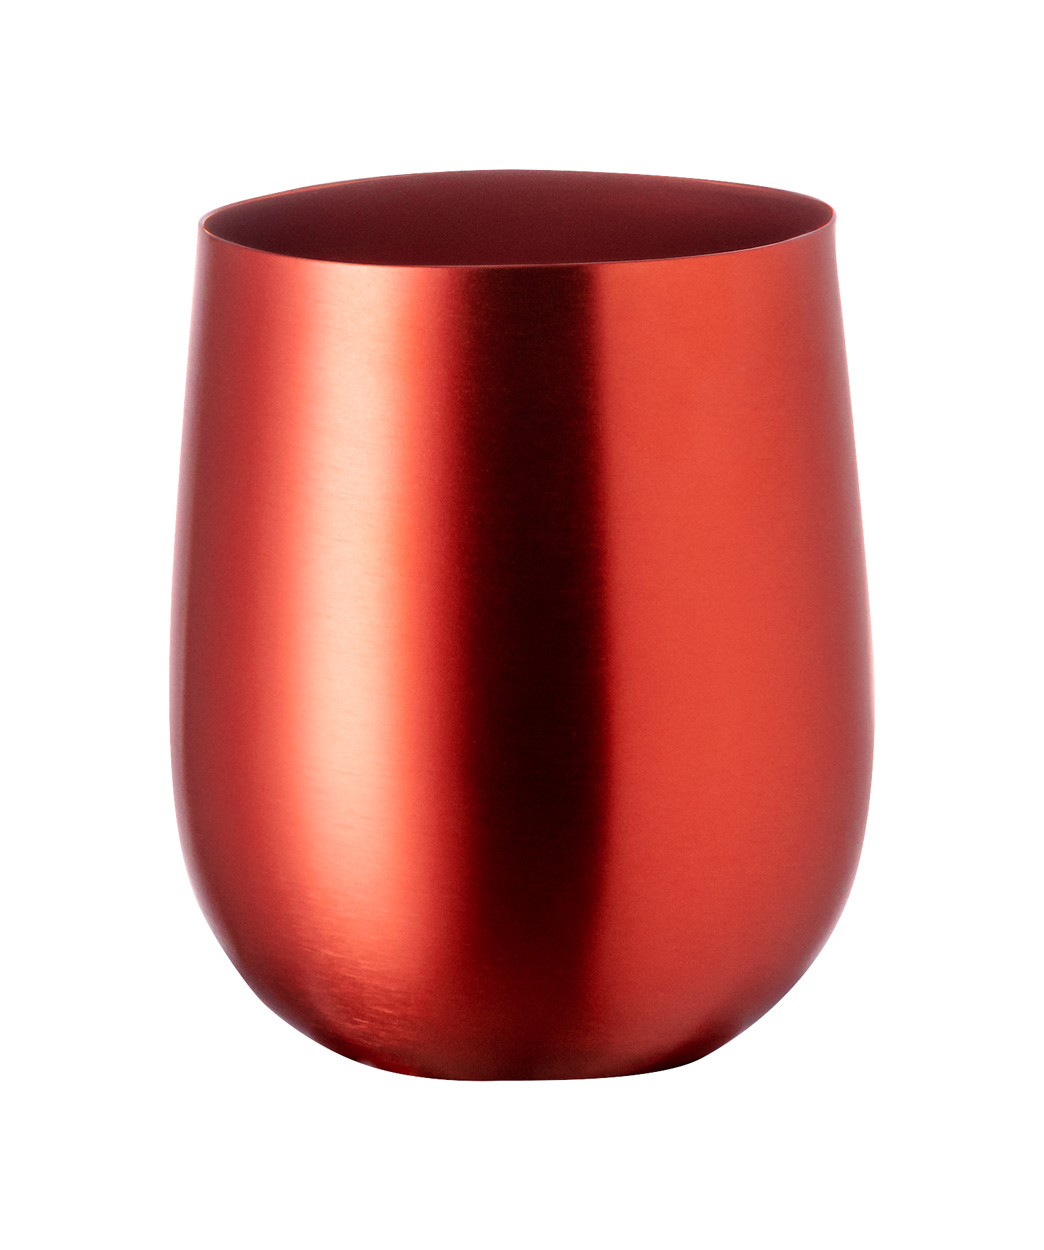 Amely mug - red